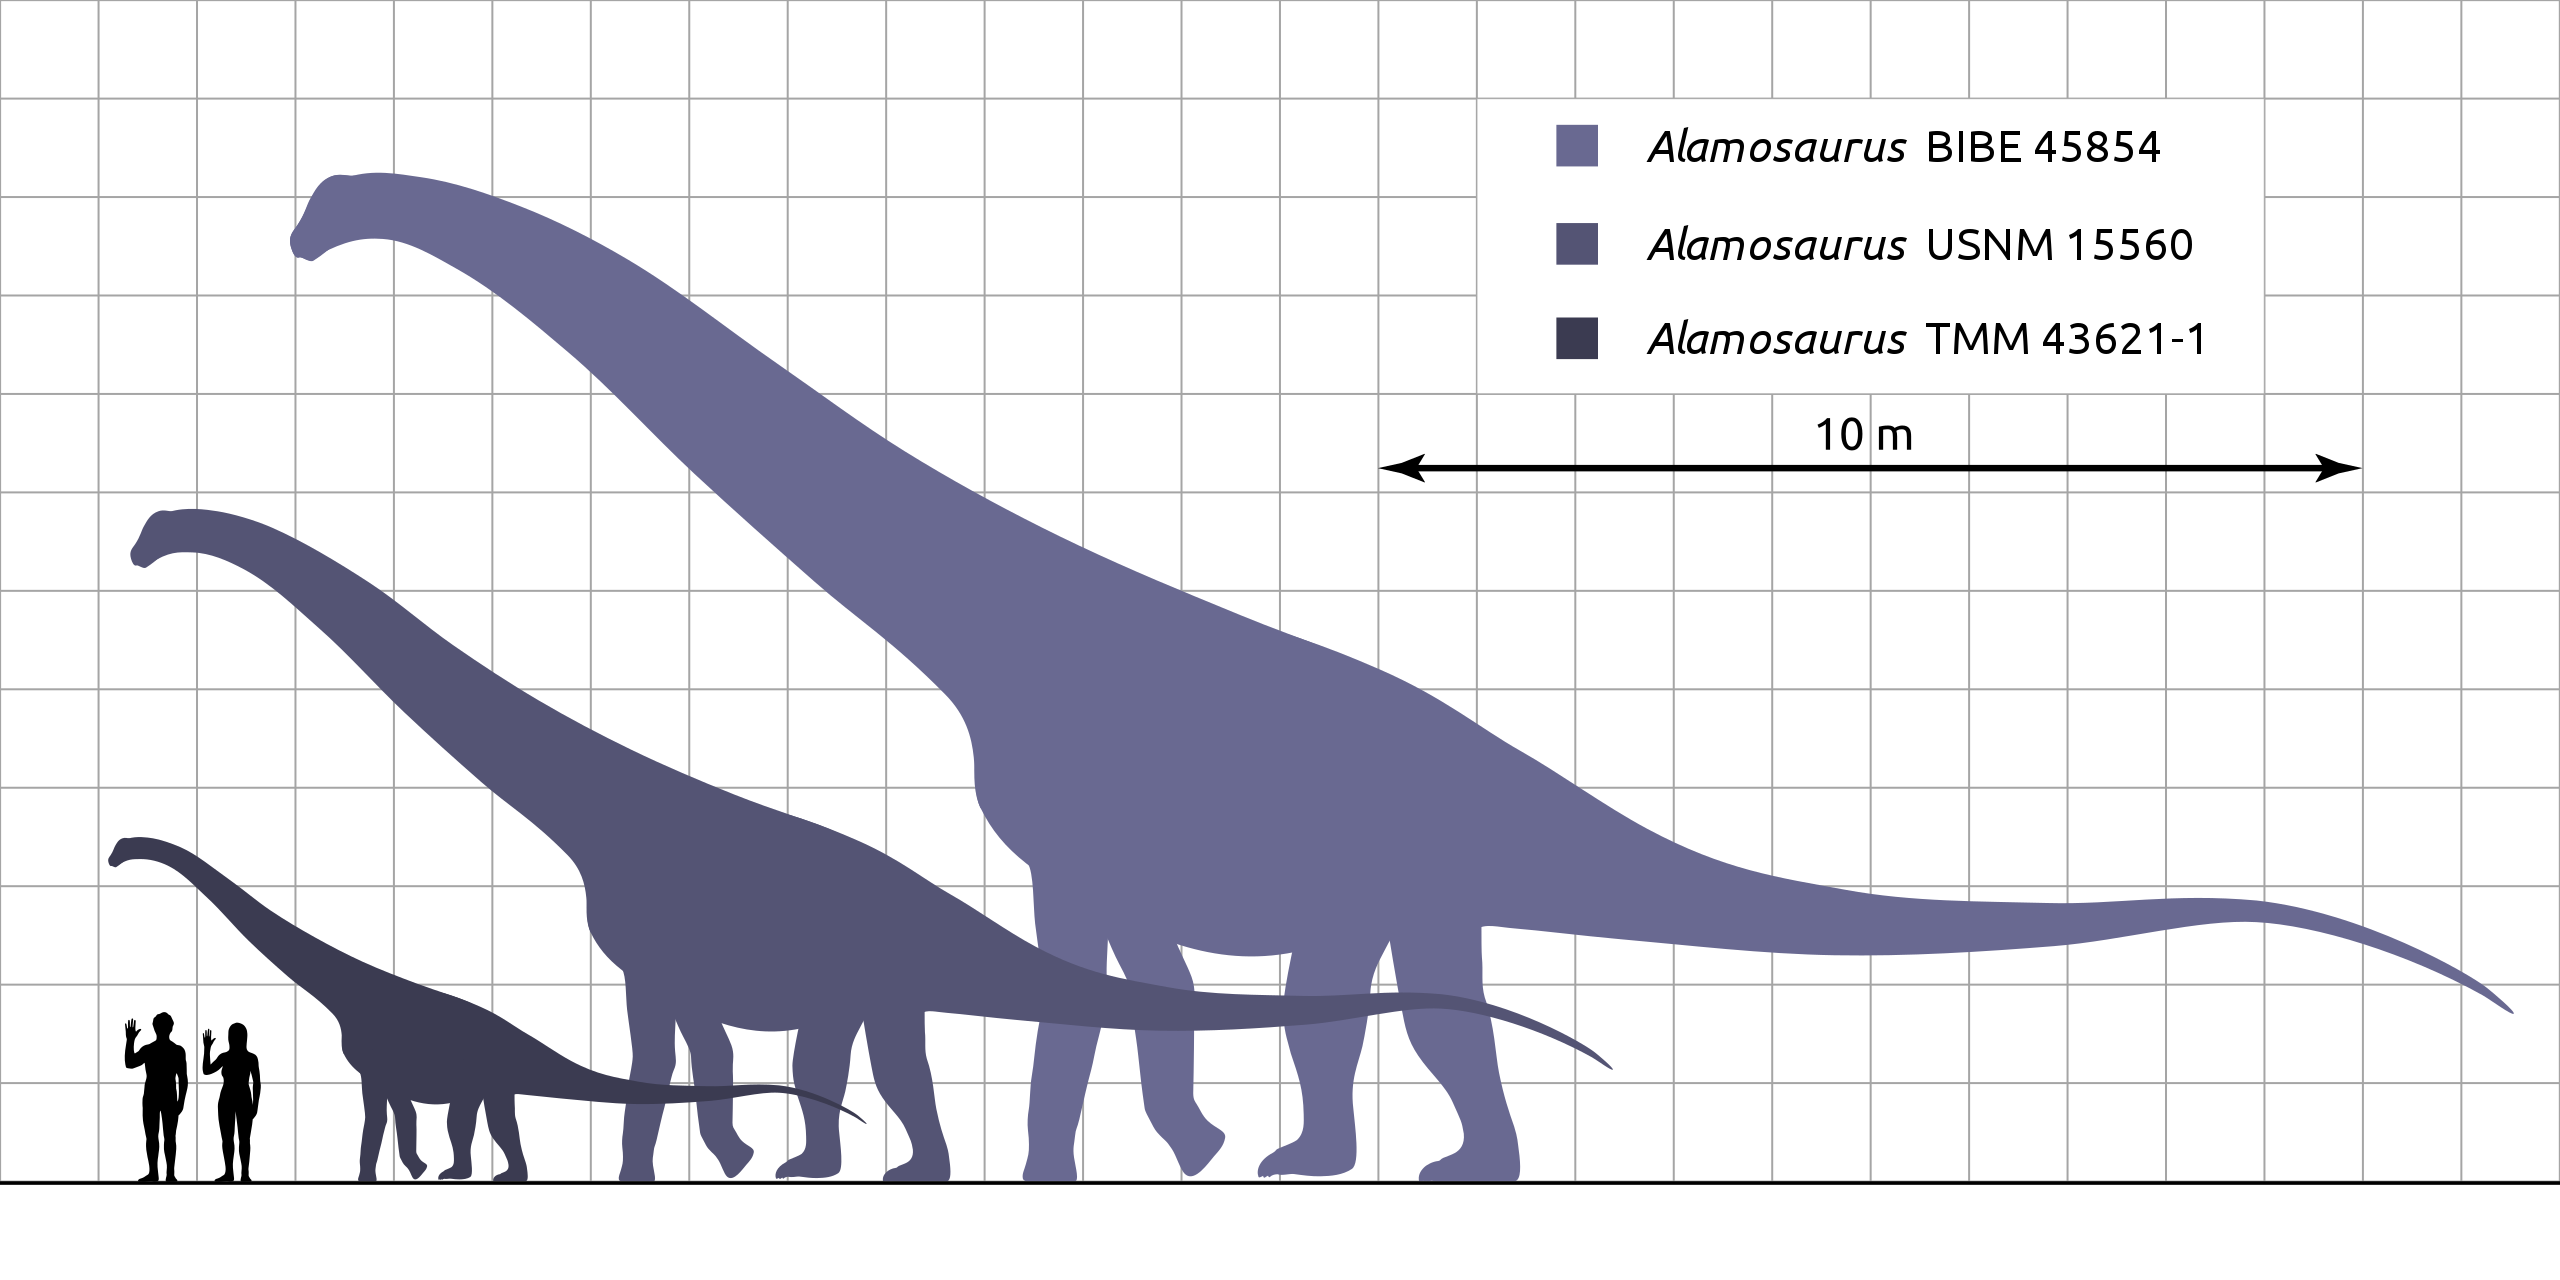 Až do roku 2011 paleontologové předpokládali, že alamosauři byli pouze sauropody střední velikosti, dosahující délky kolem 20 metrů a hmotnosti asi 10 až 20 tun. Analýza obřího obratle tohoto sauropoda však ukázala, že odrostlí jedinci se velikostně 